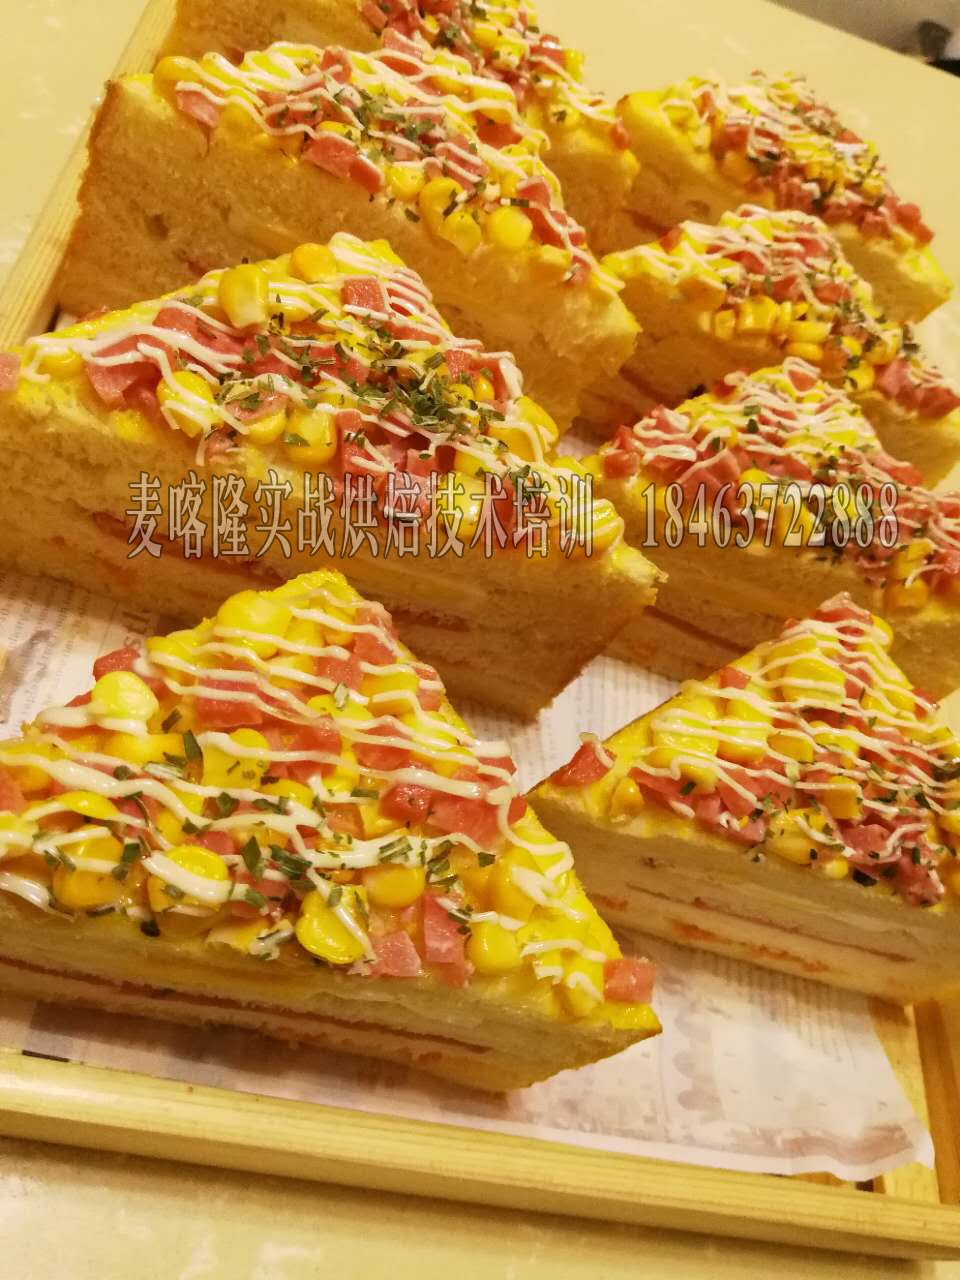 济宁蛋糕技术培训糕点面包技术学校济宁蛋糕技术培训糕点面包技术学校